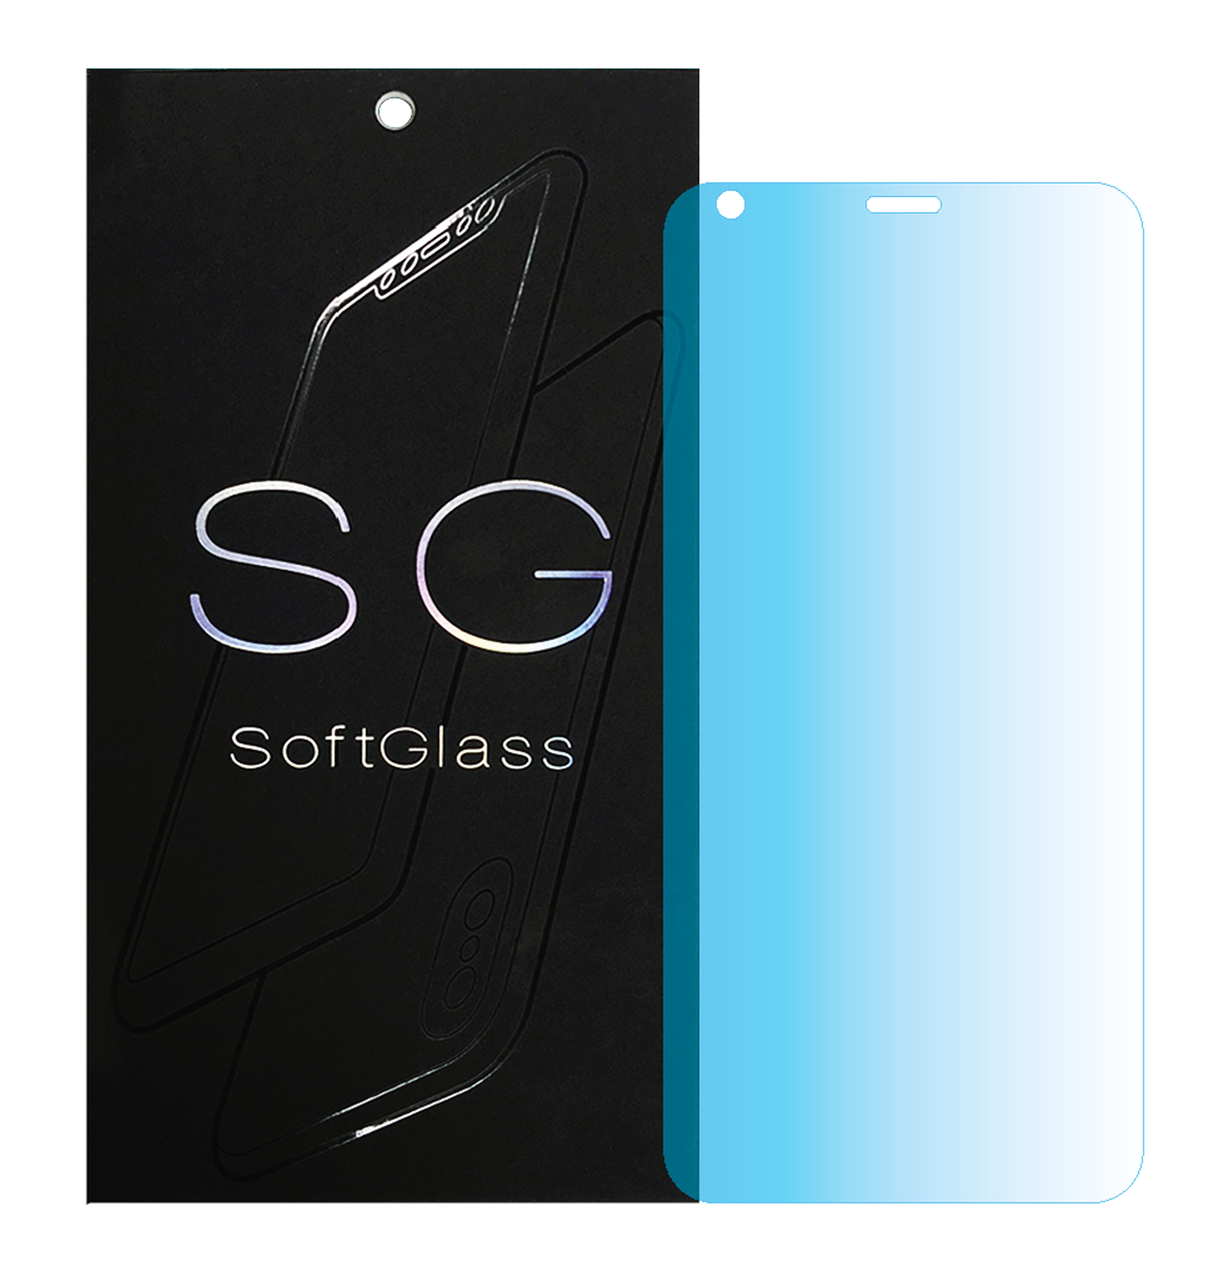 Бронеплівка LG Q6 на екран поліуретанова SoftGlass